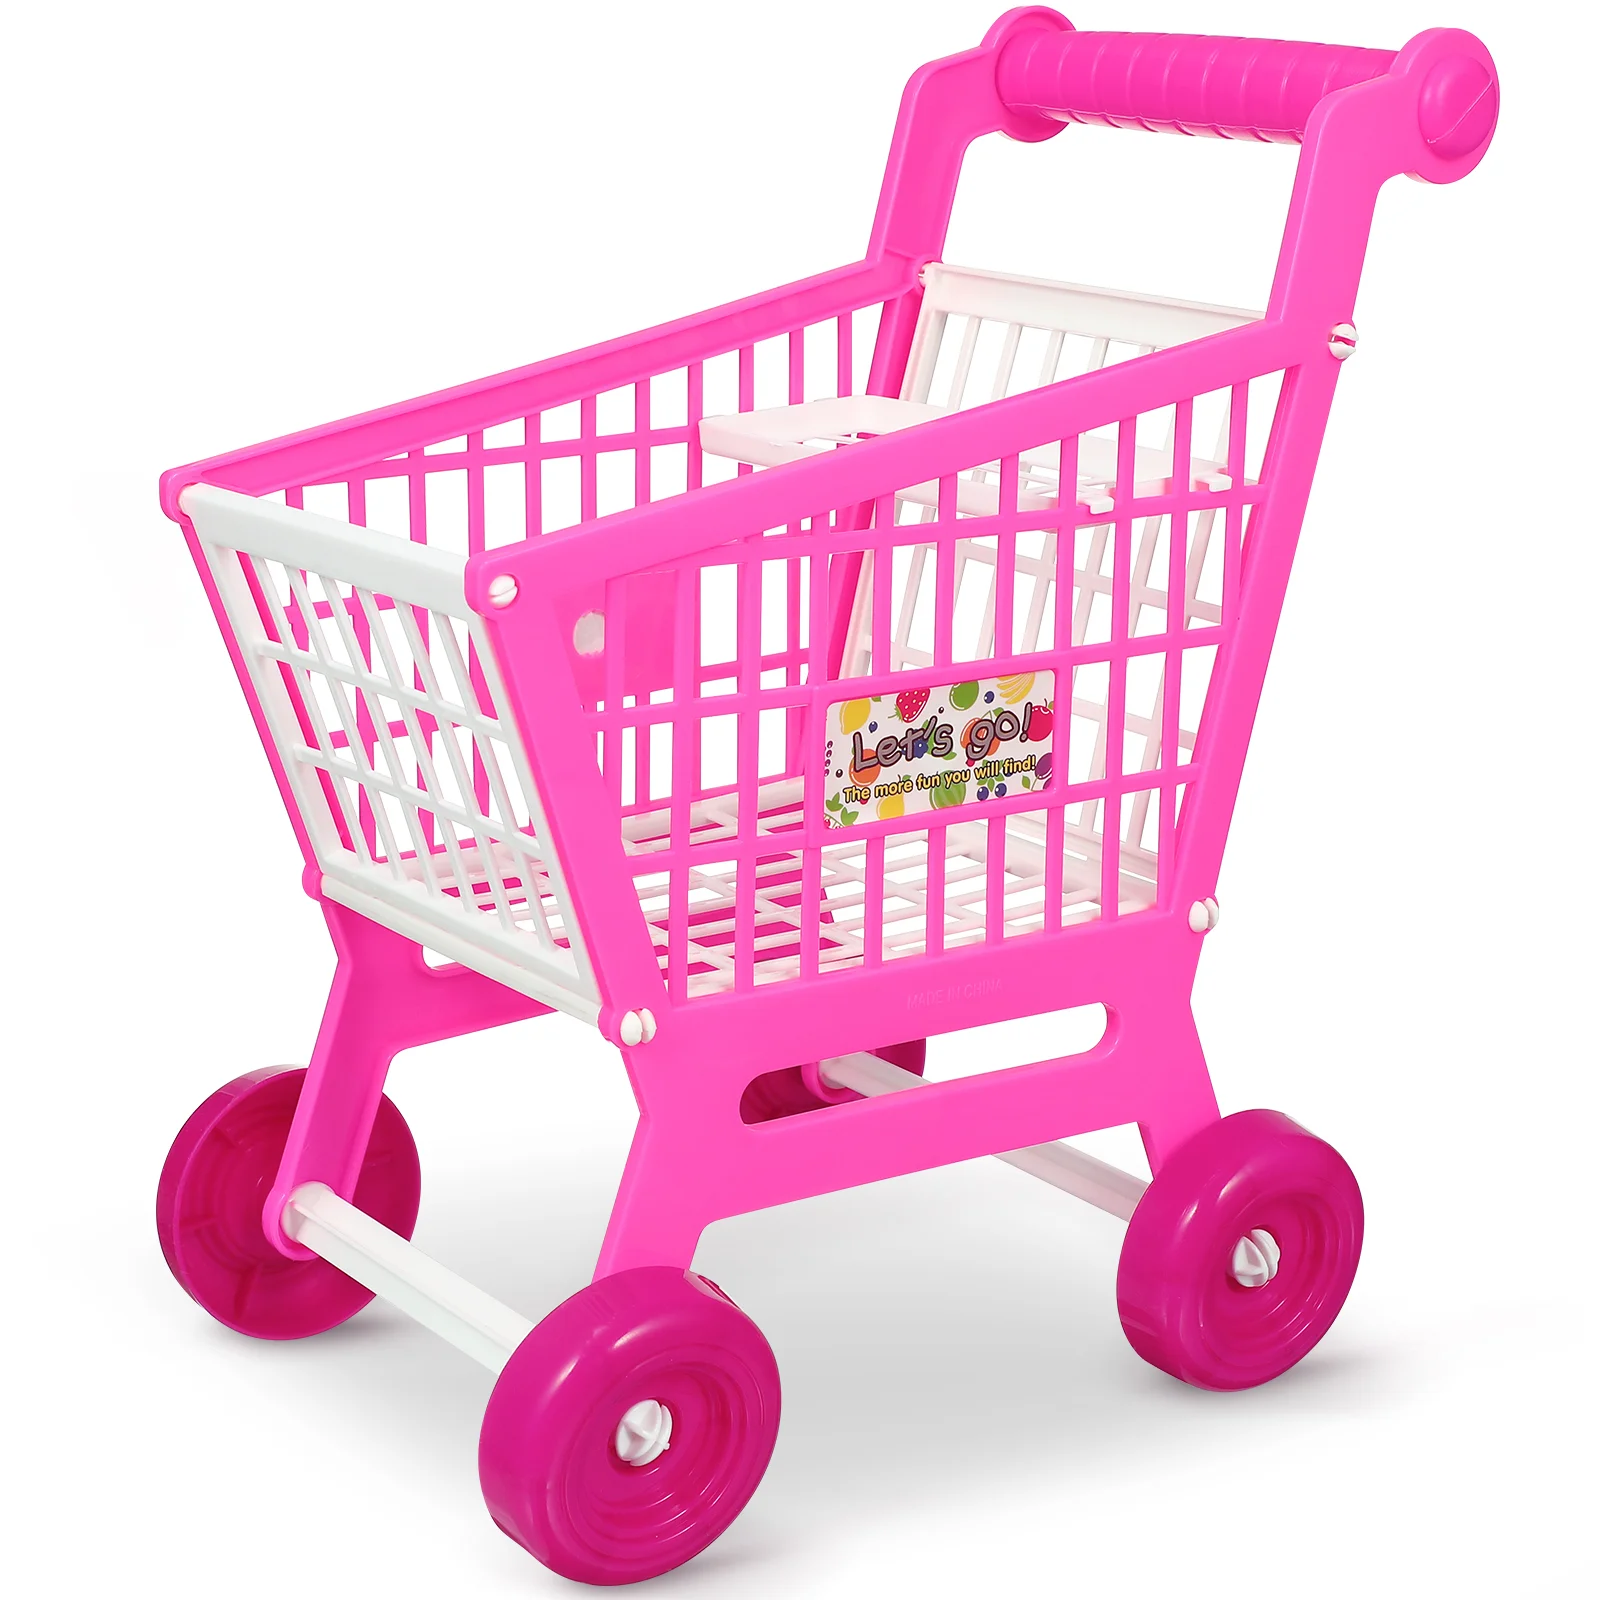 

Имитация корзины для покупок, игрушки для супермаркета, Детские фургоны, продуктовые изделия из АБС-пластика, детские игрушки